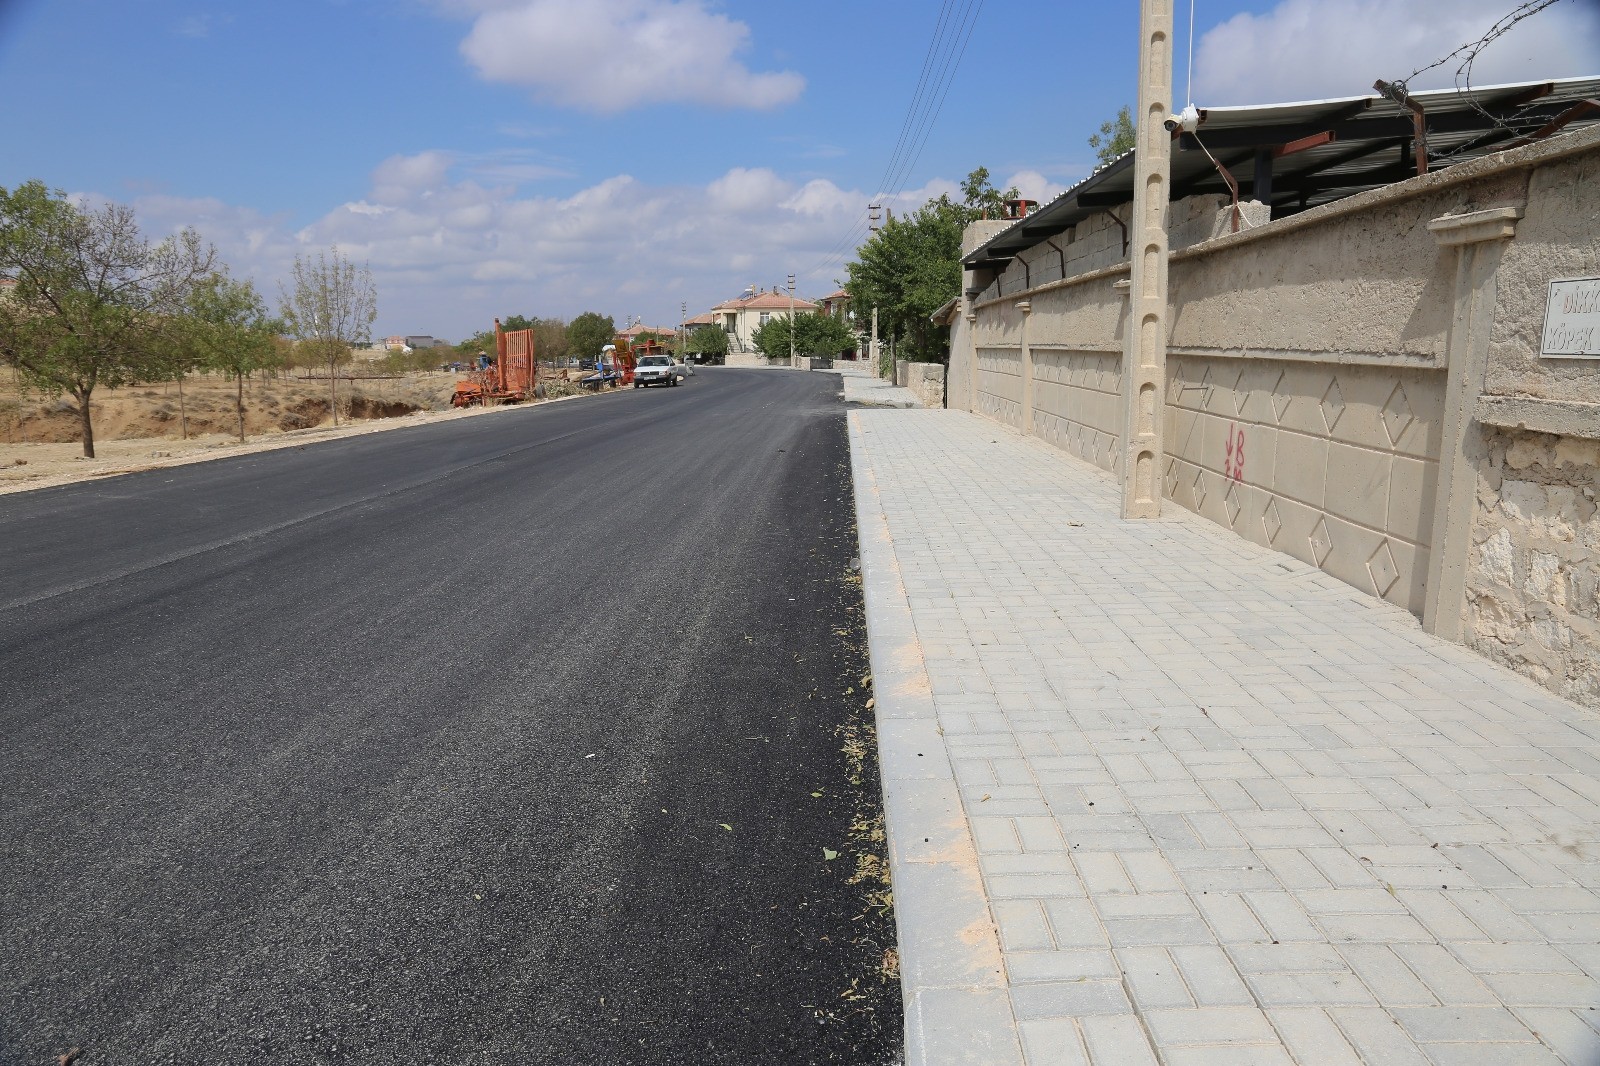 Karaman Belediyesi, Urgan Mahallesindeki asfalt çalışmasını tamamlandı